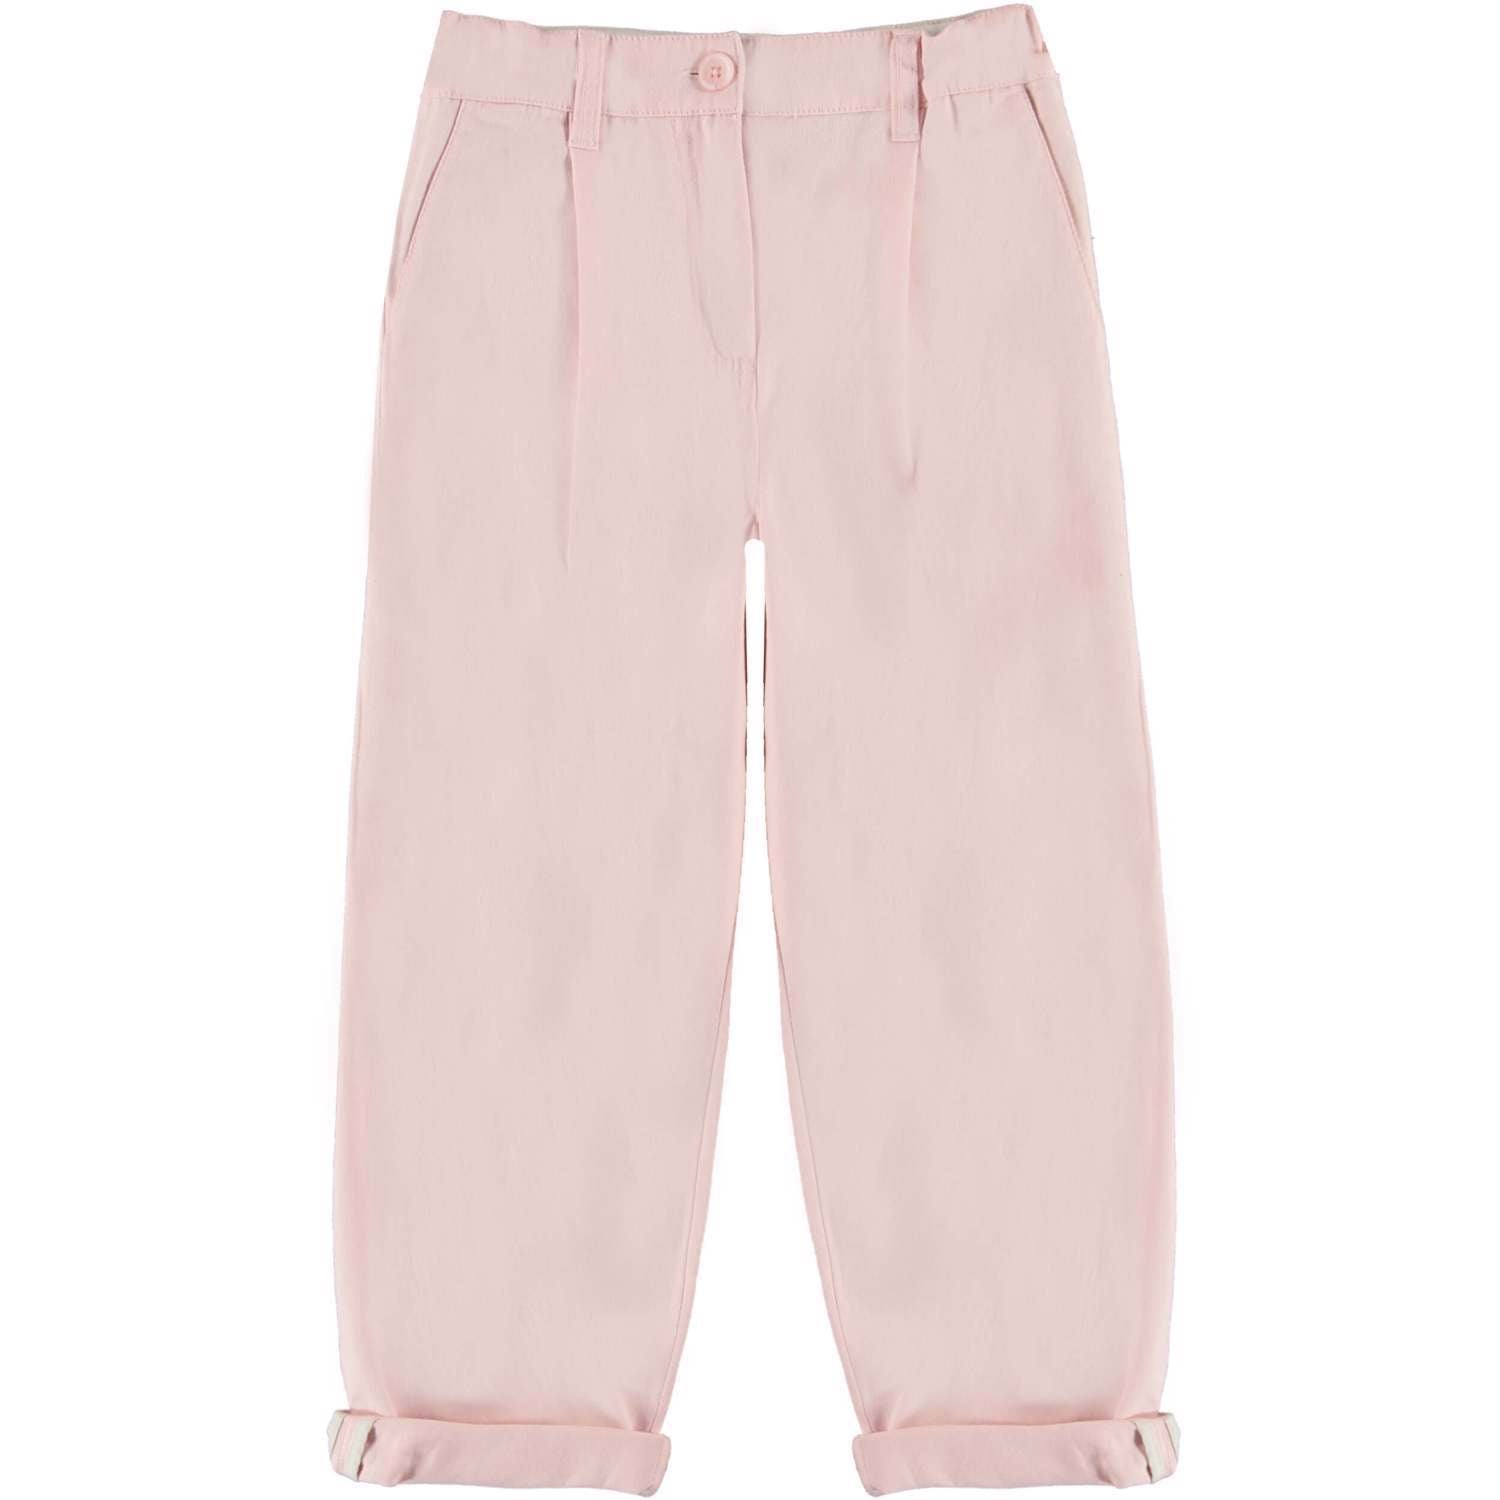 Pantalone chinos rosa per bambina